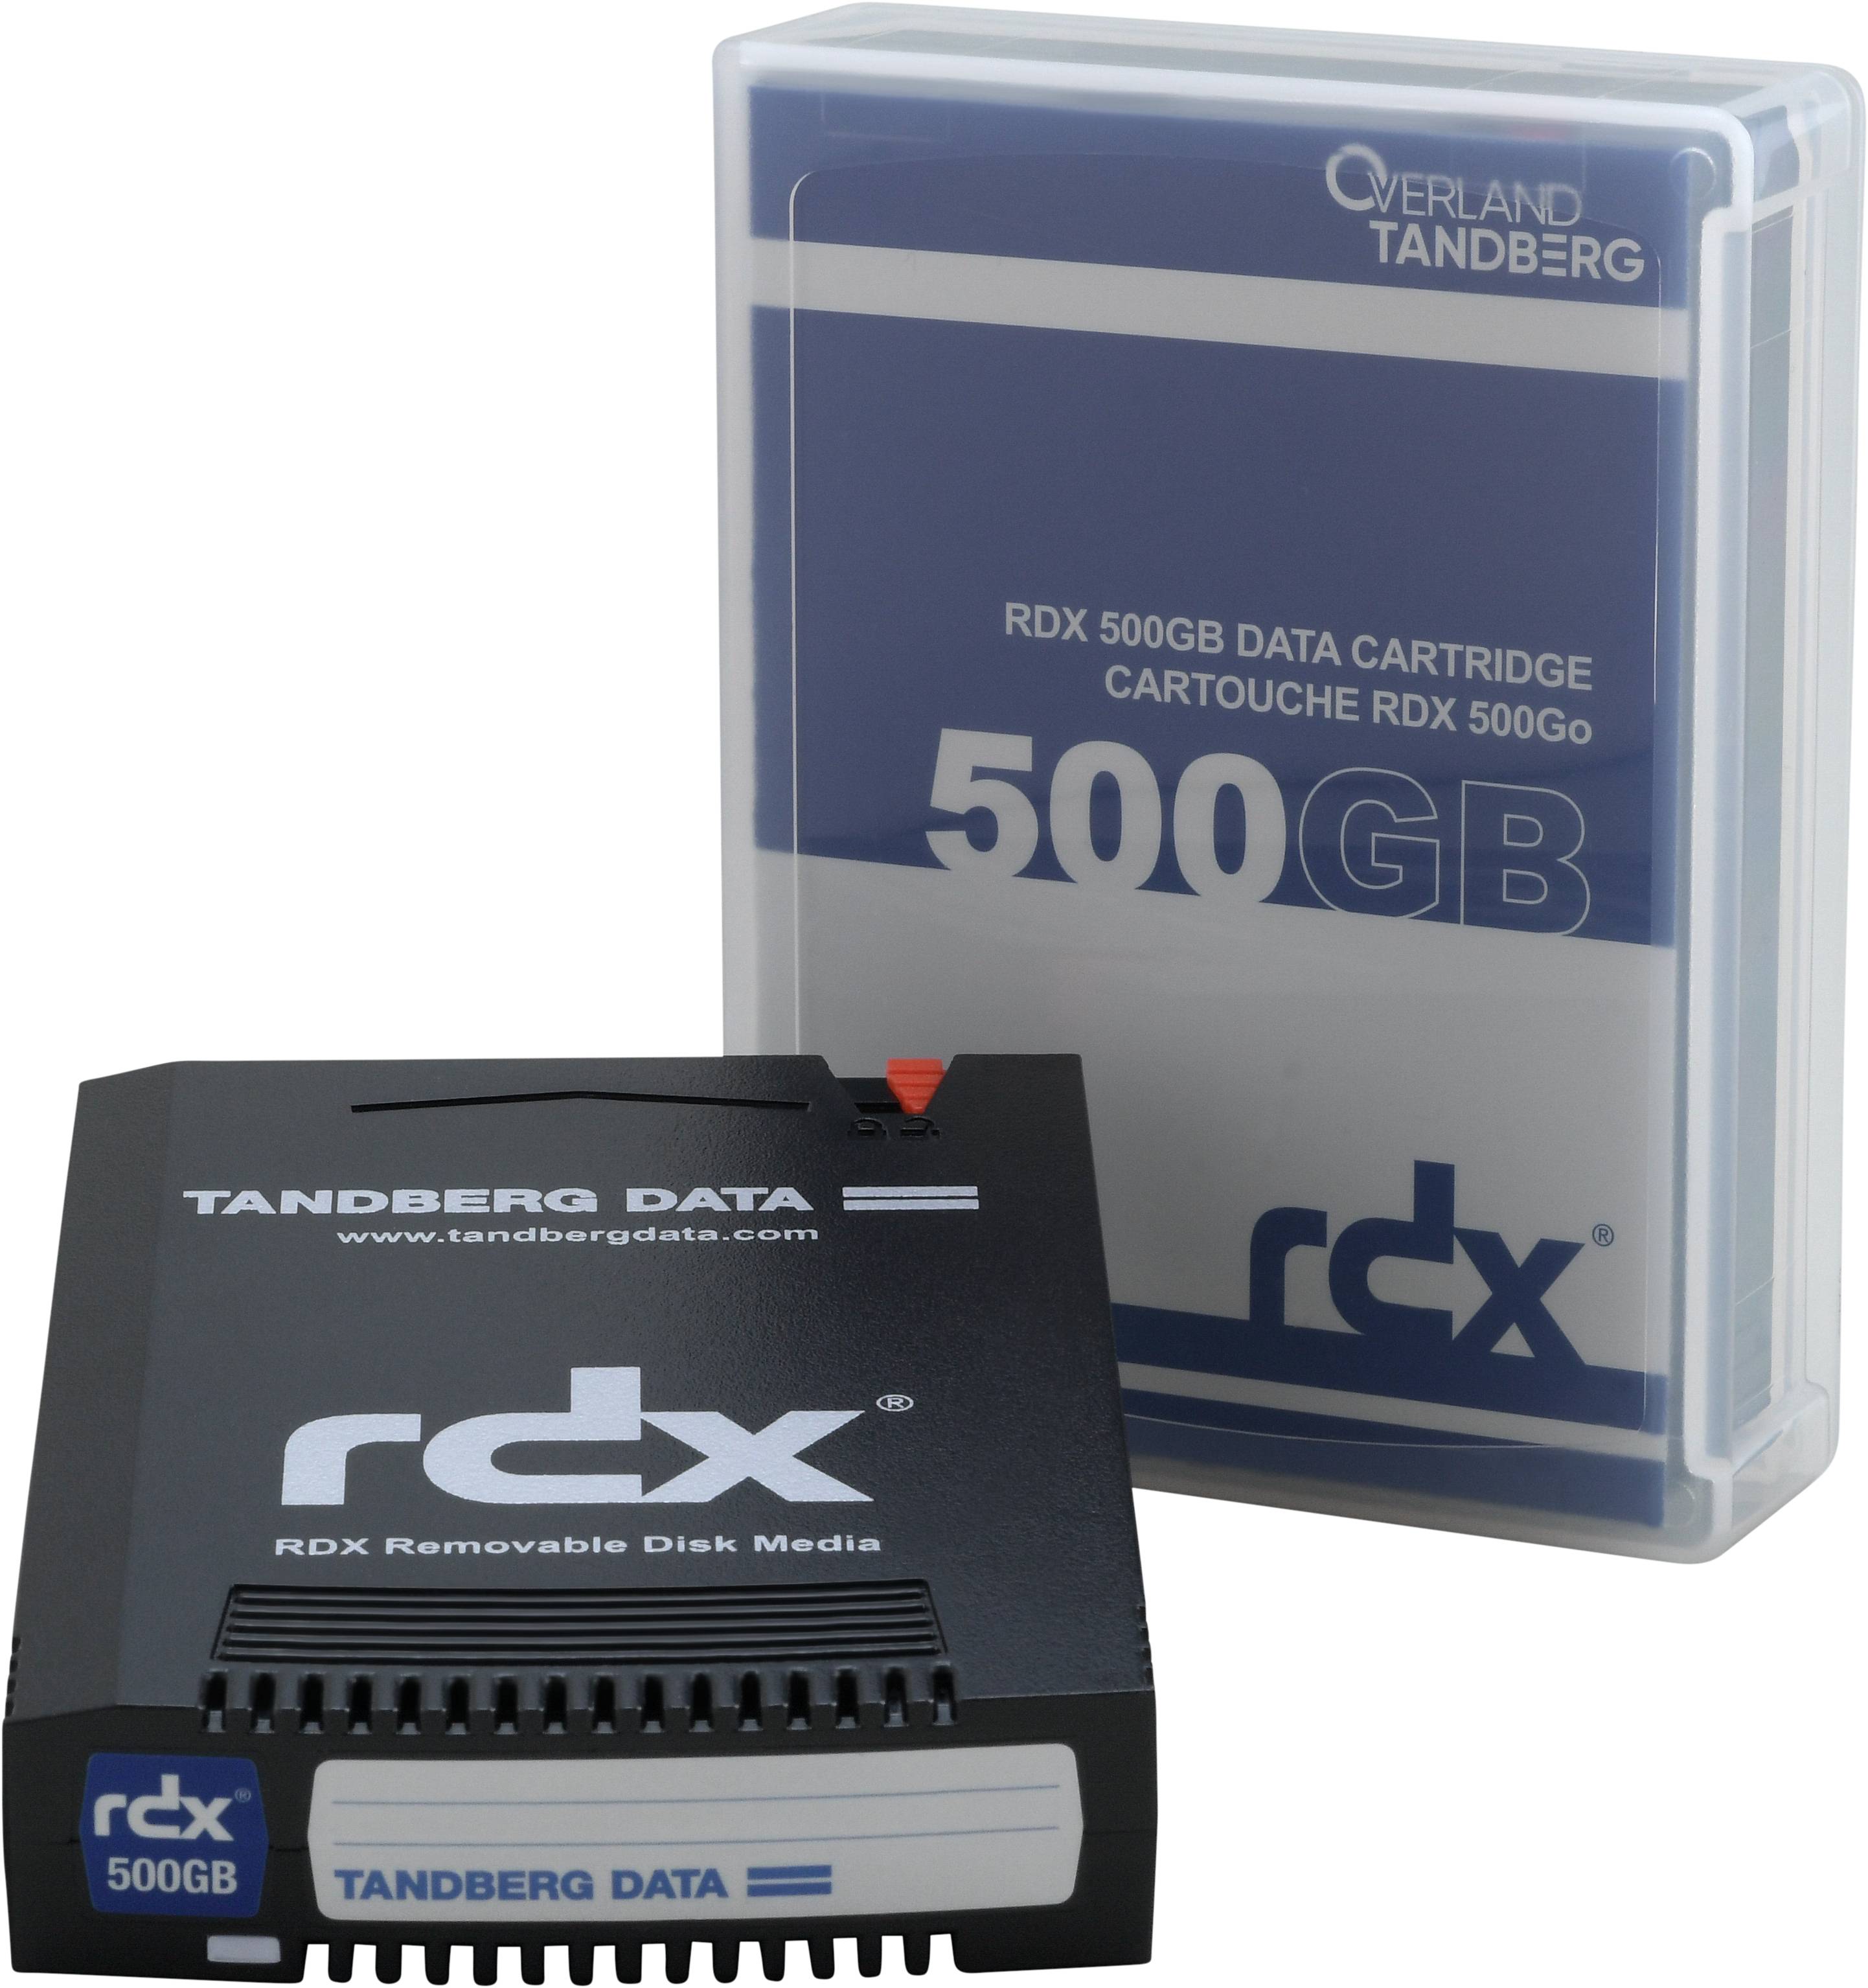 Rca Informatique - image du produit : RDX 500 GB CARTRIDGE .